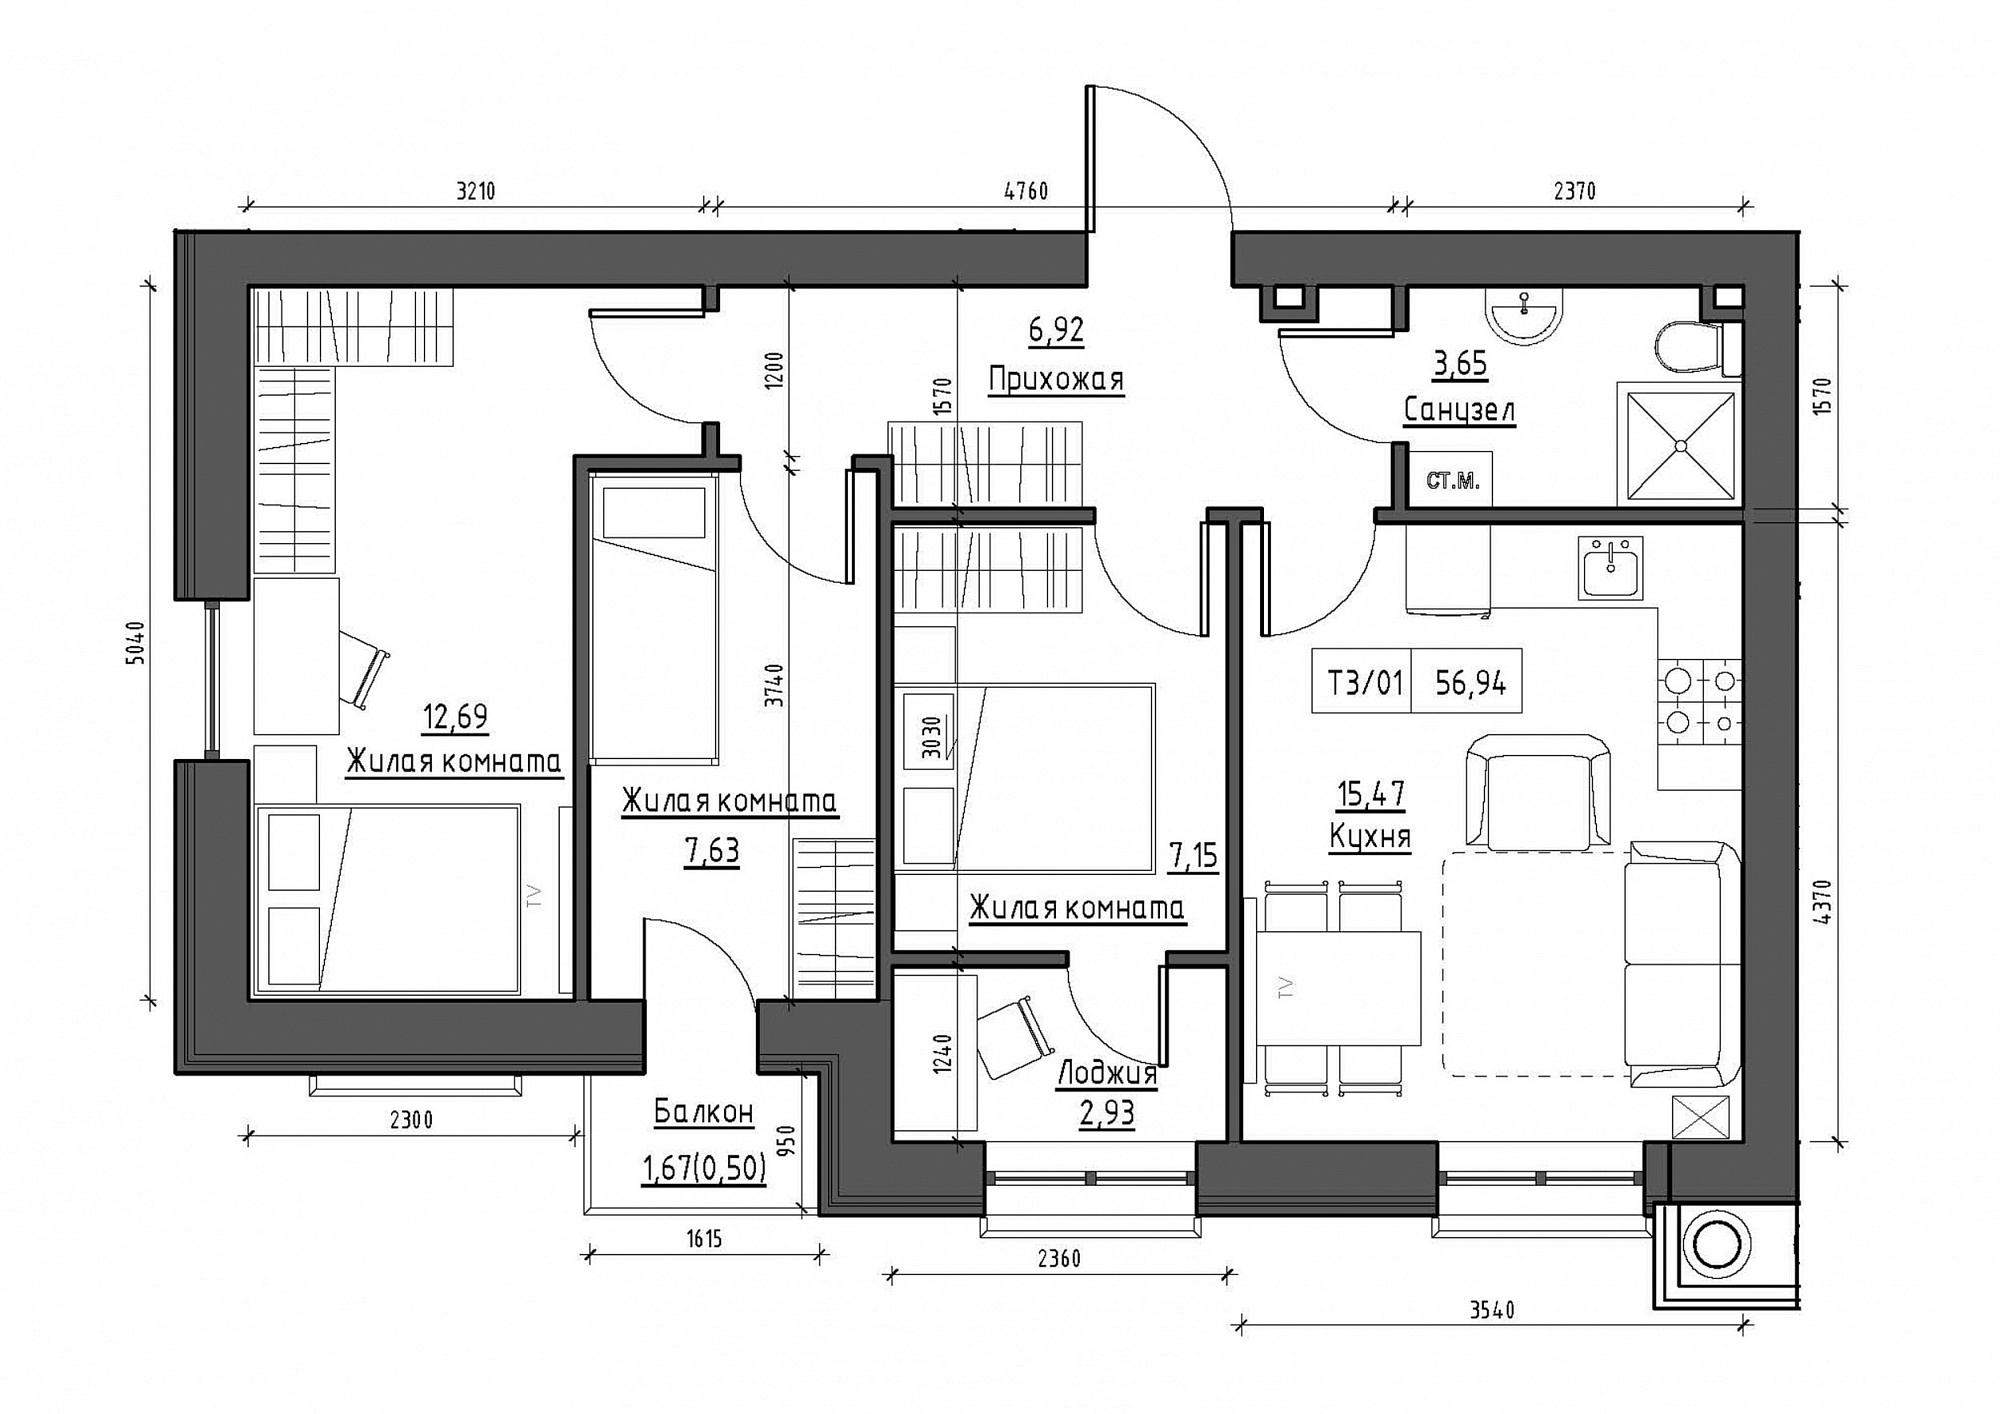 Планування 3-к квартира площею 56.94м2, KS-012-04/0008.